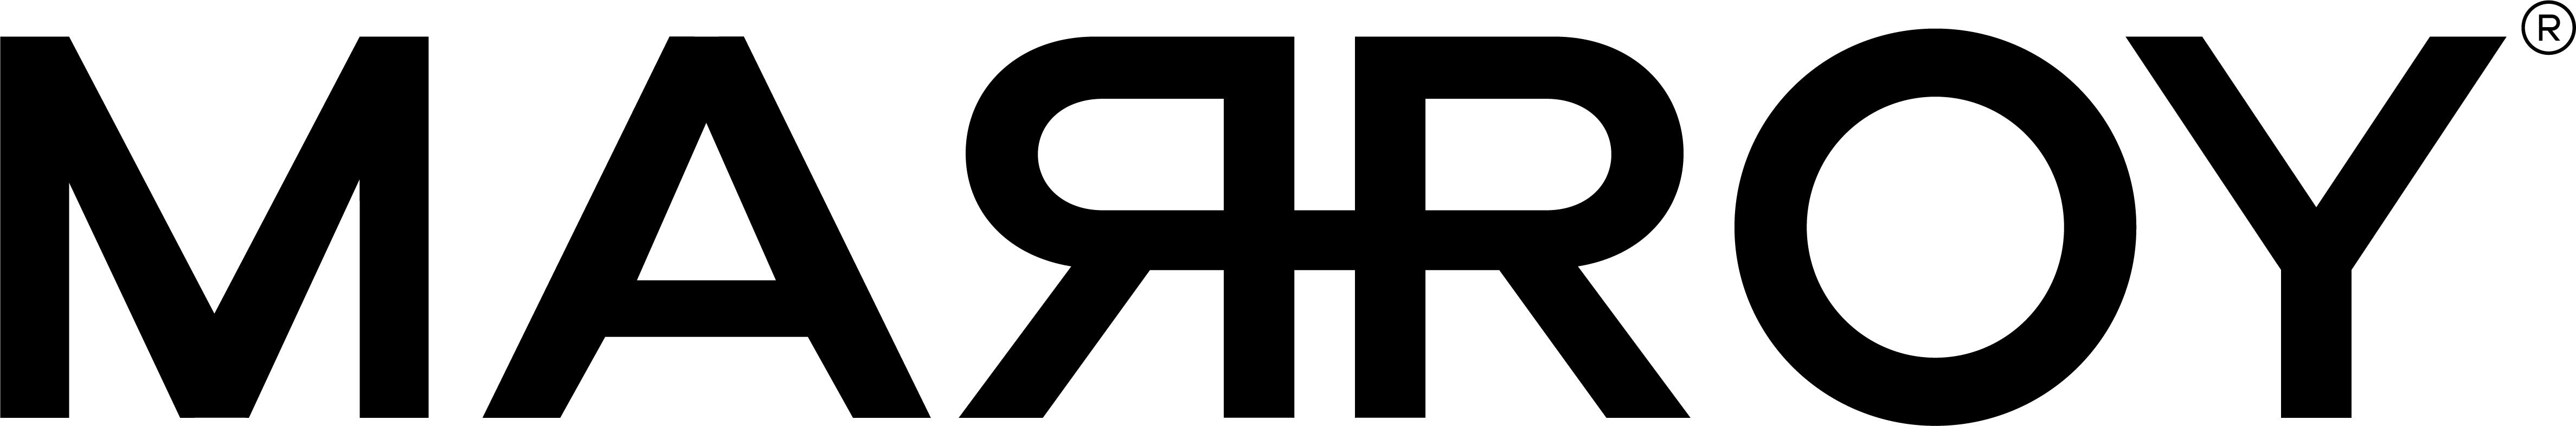 MARROY logo shopaquatica.com